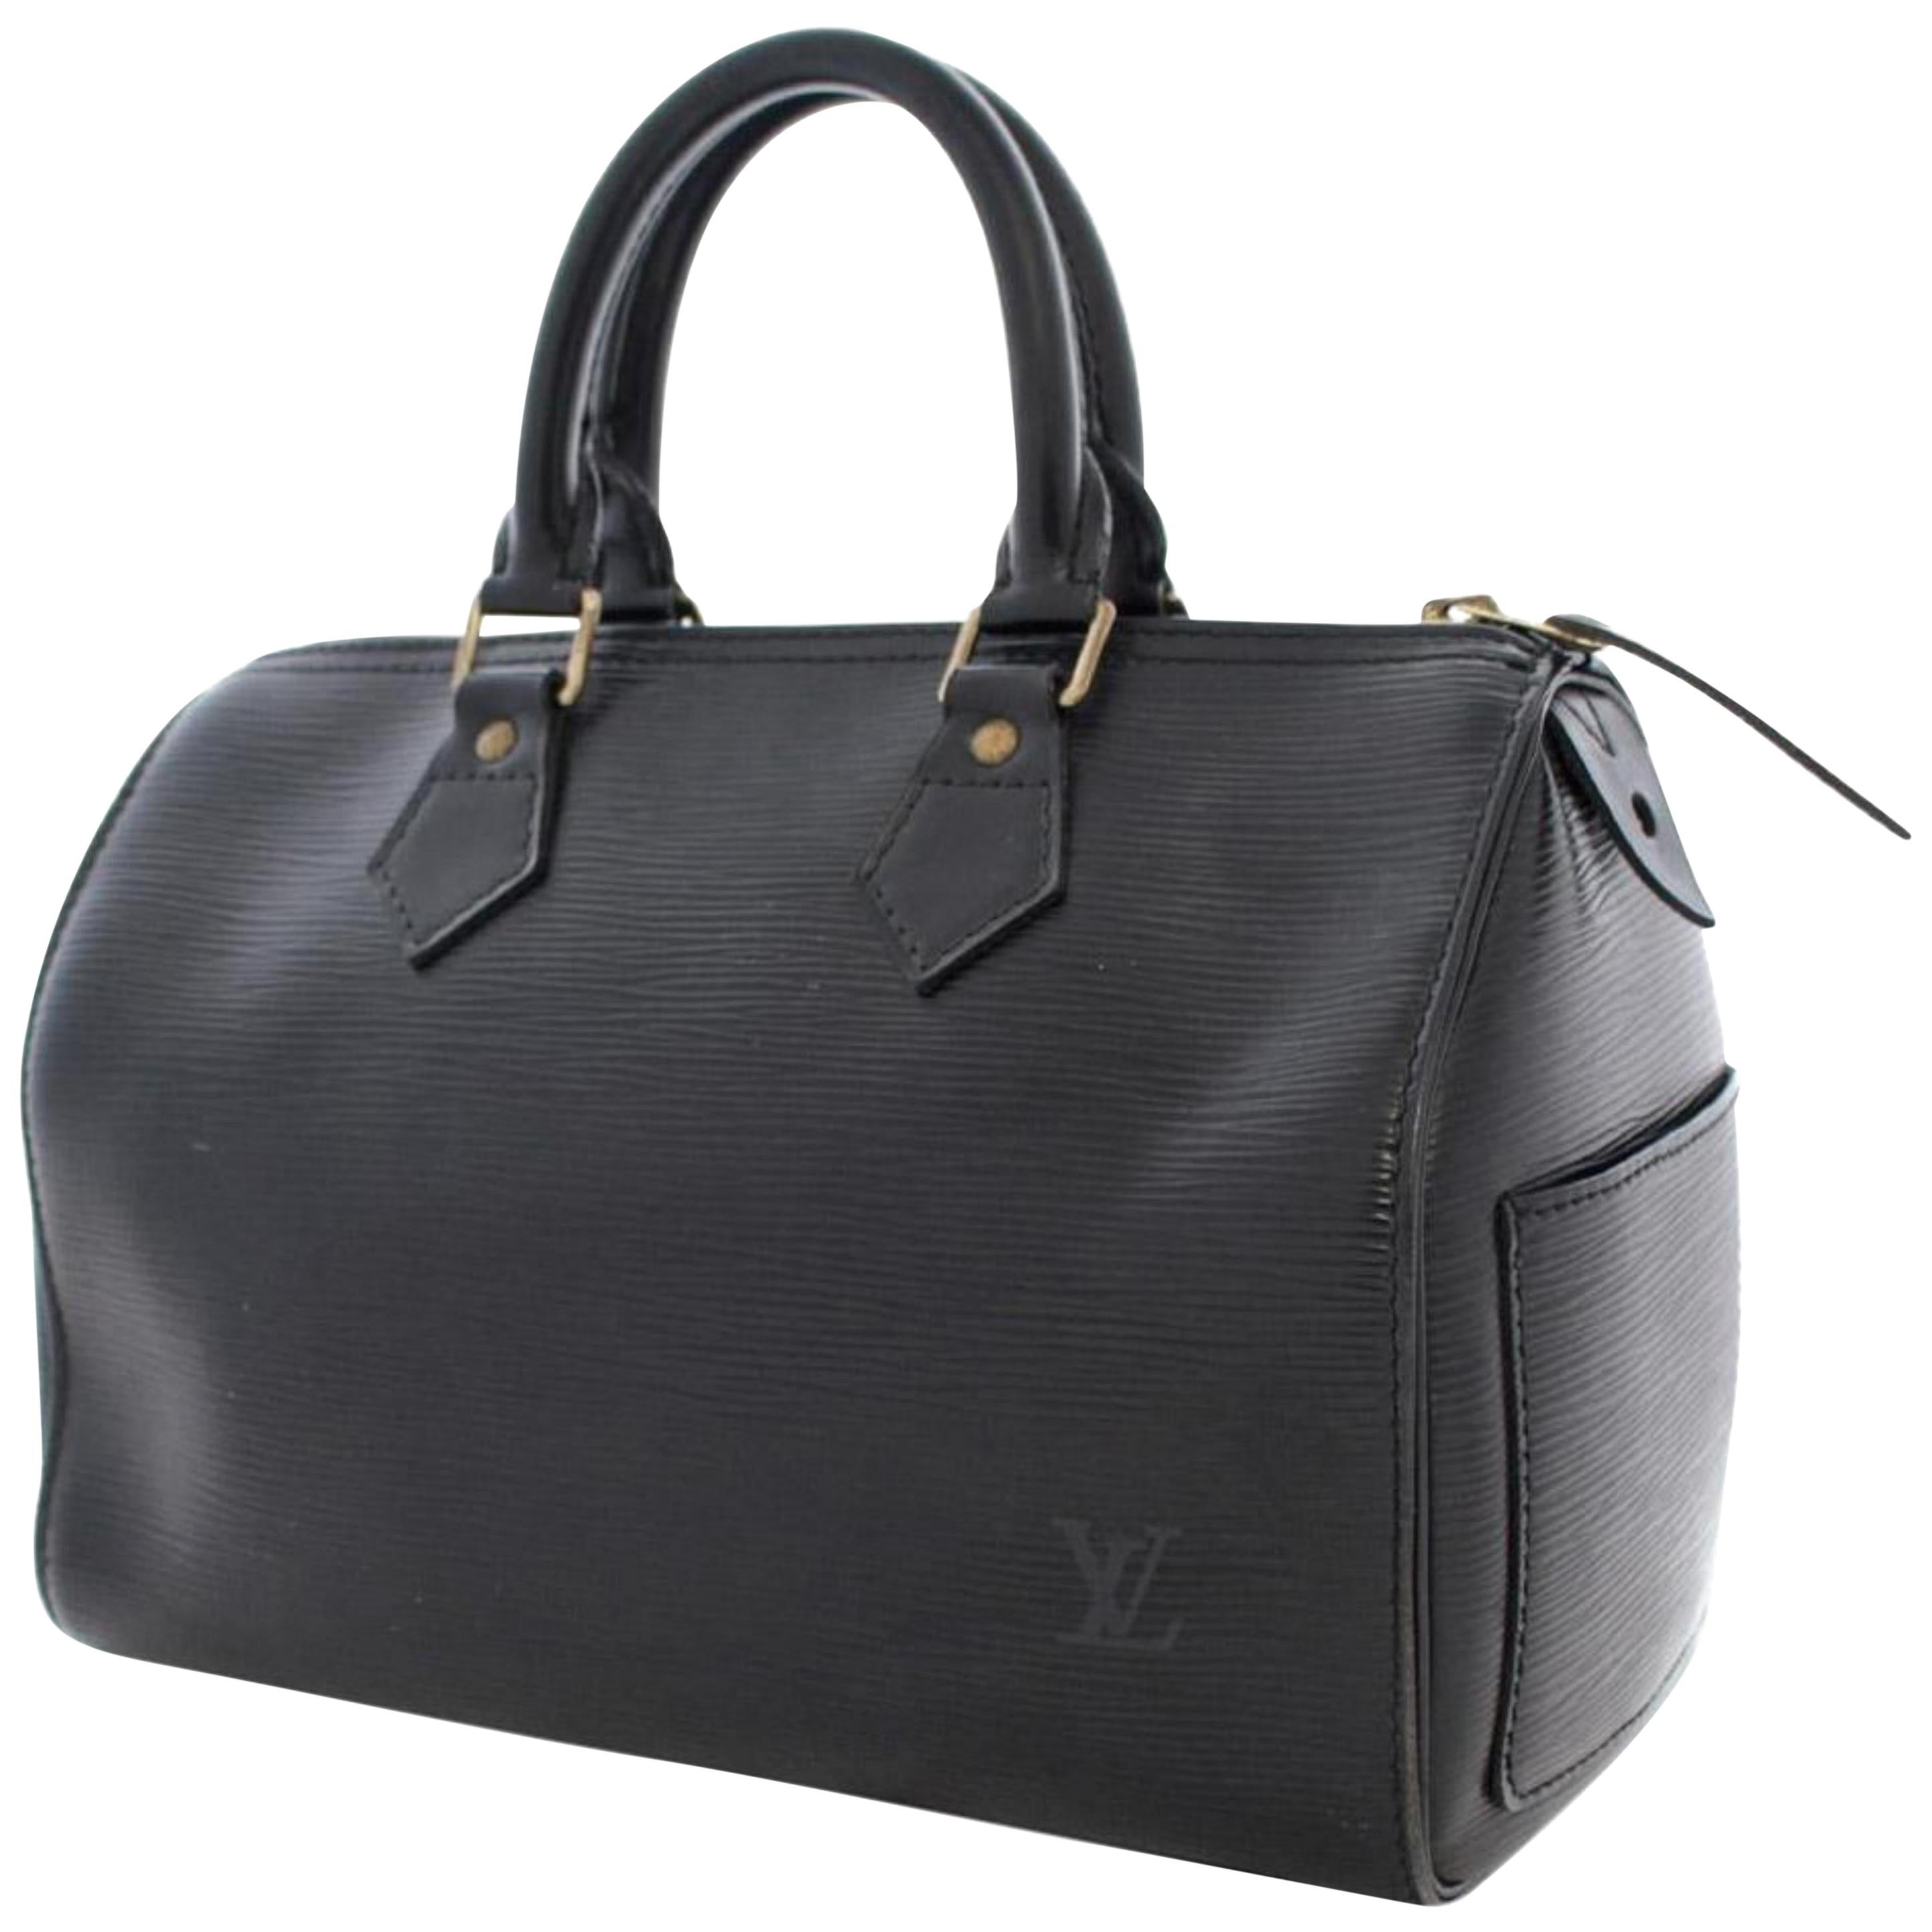 Louis Vuitton Speedy Noir 25 869188 Black Leather Satchel For Sale